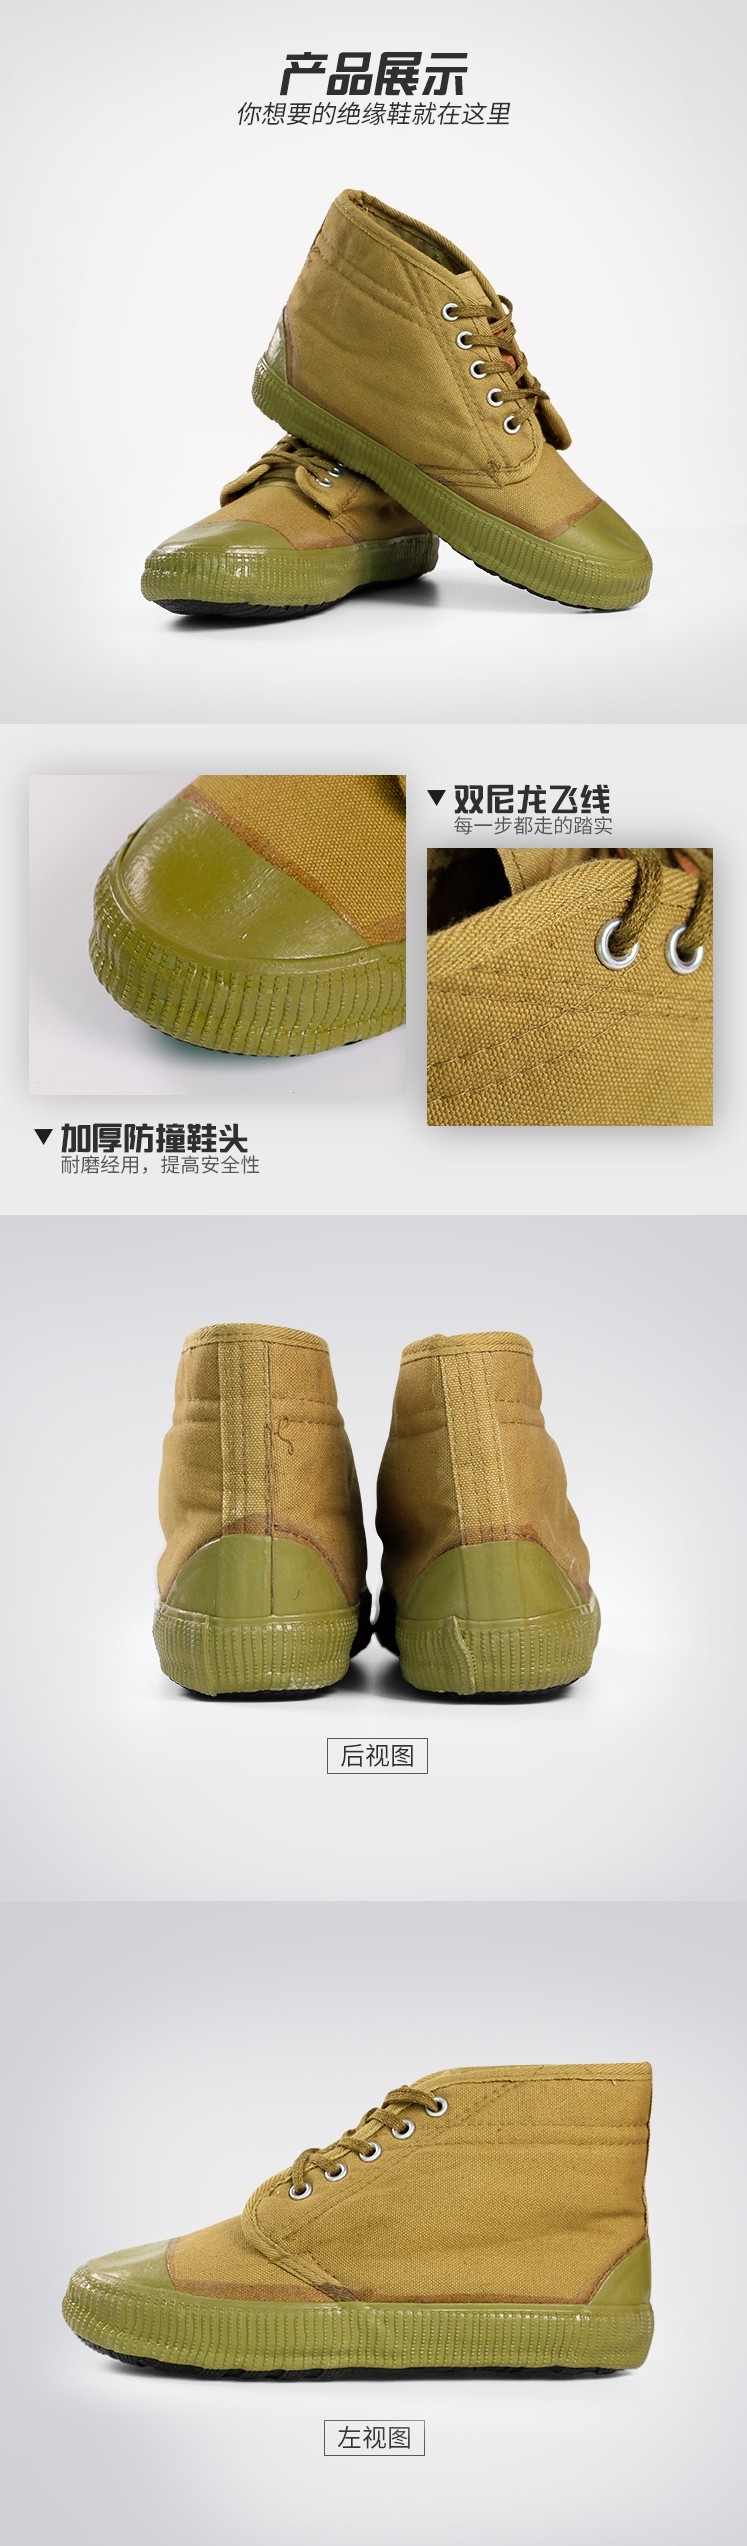 安全牌Z010-1防寒保暖绝缘鞋图片